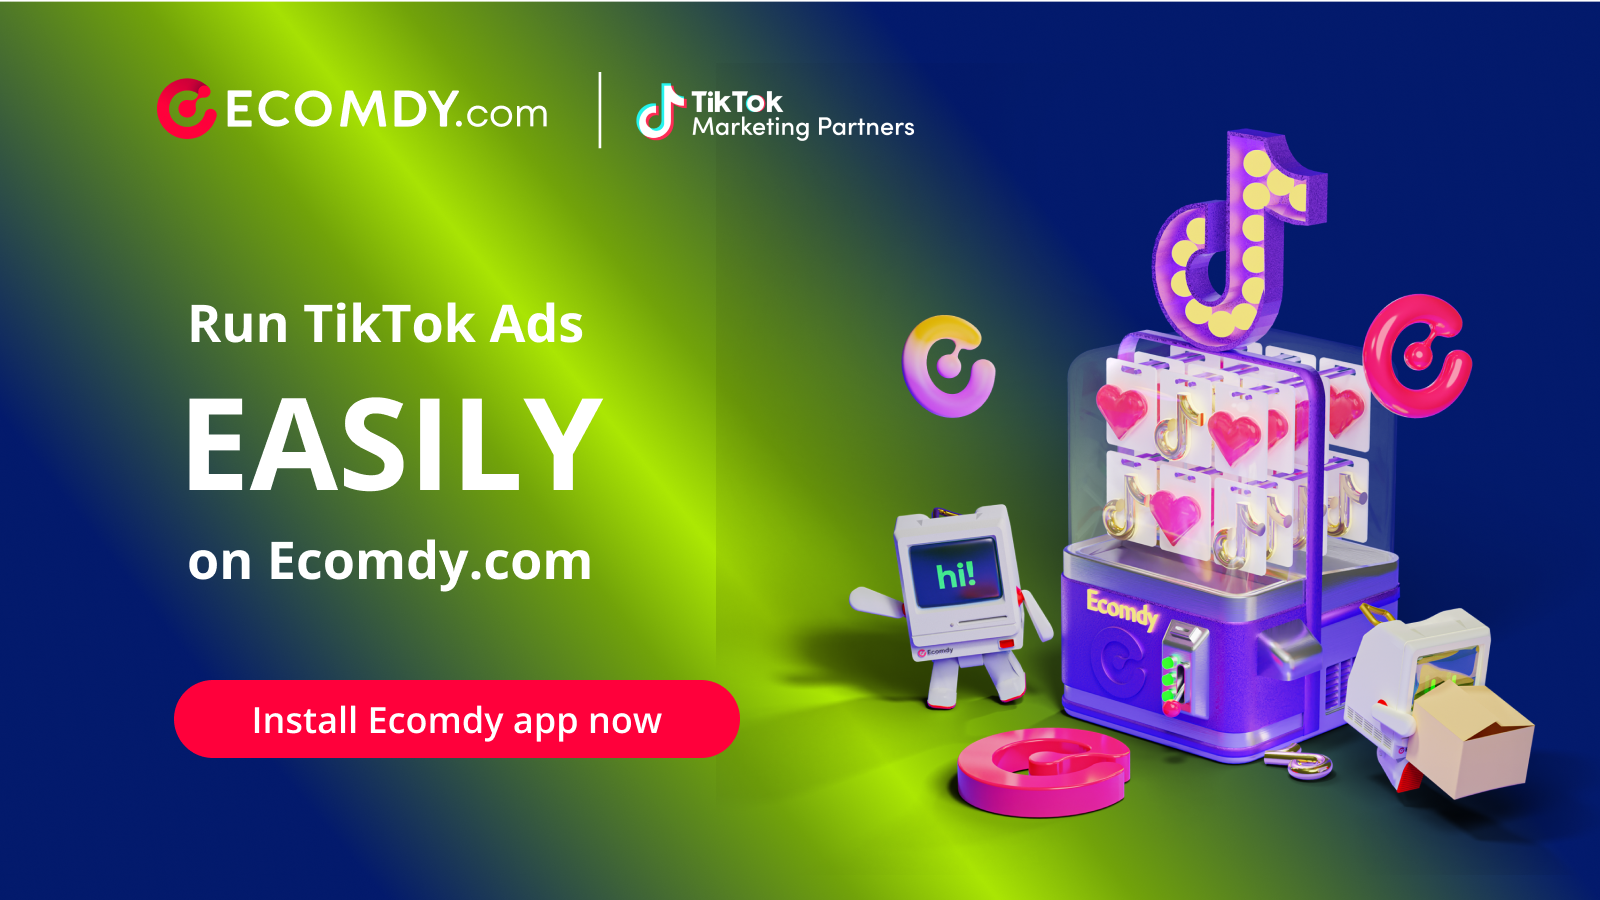 Führen Sie TikTok-Anzeigen direkt auf Ecomdy.com aus